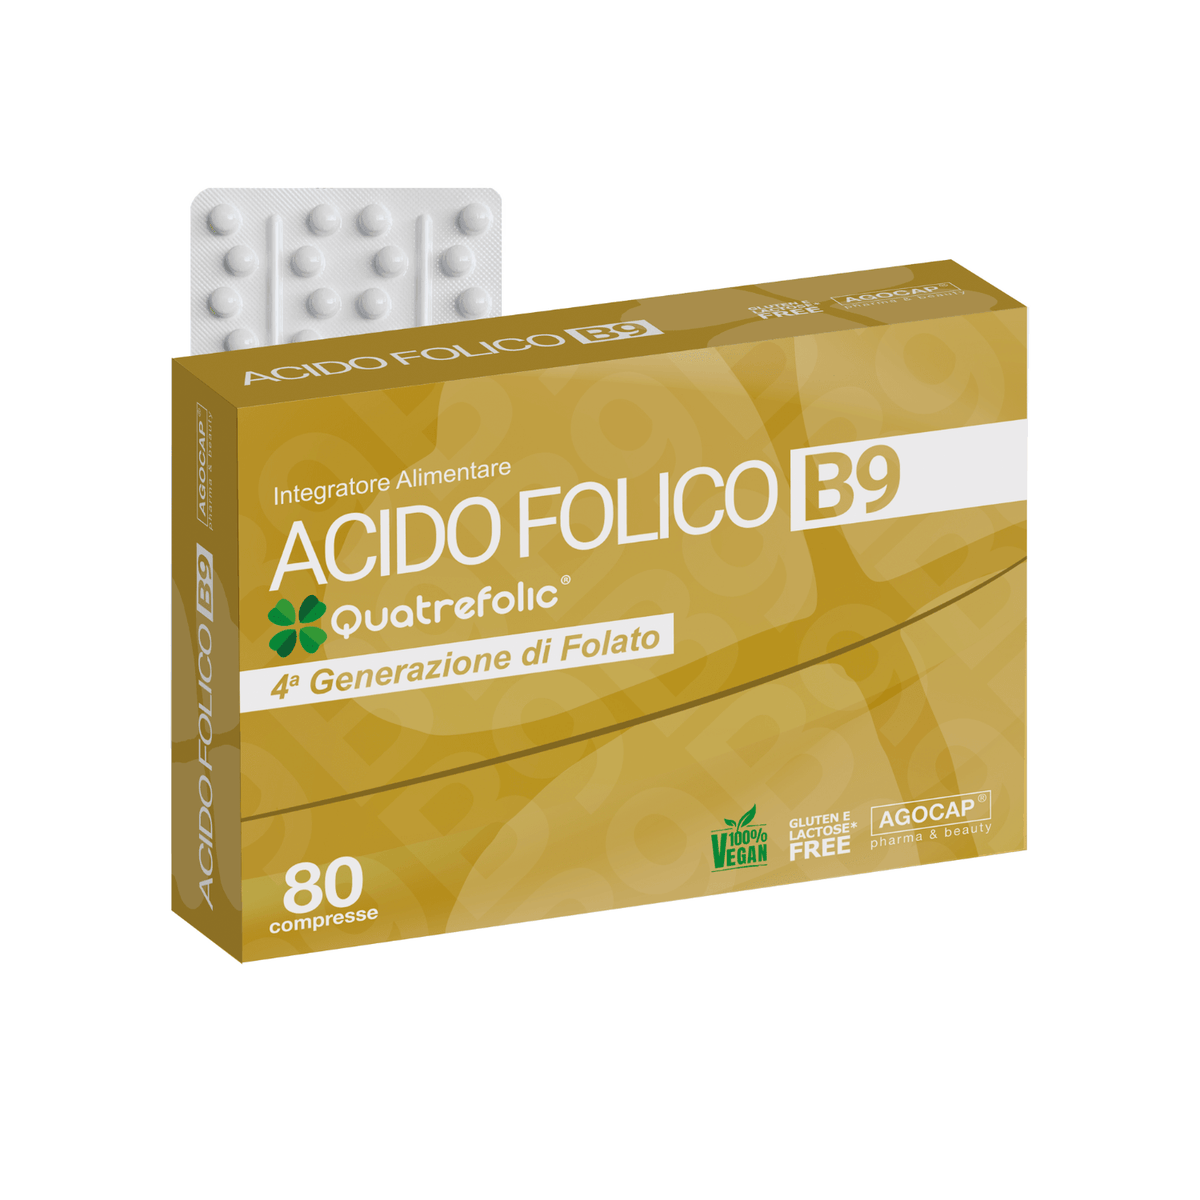 Acido Folico di 4 generazione Quatrefolic 80 compresse - Agocap Pharma & Beauty